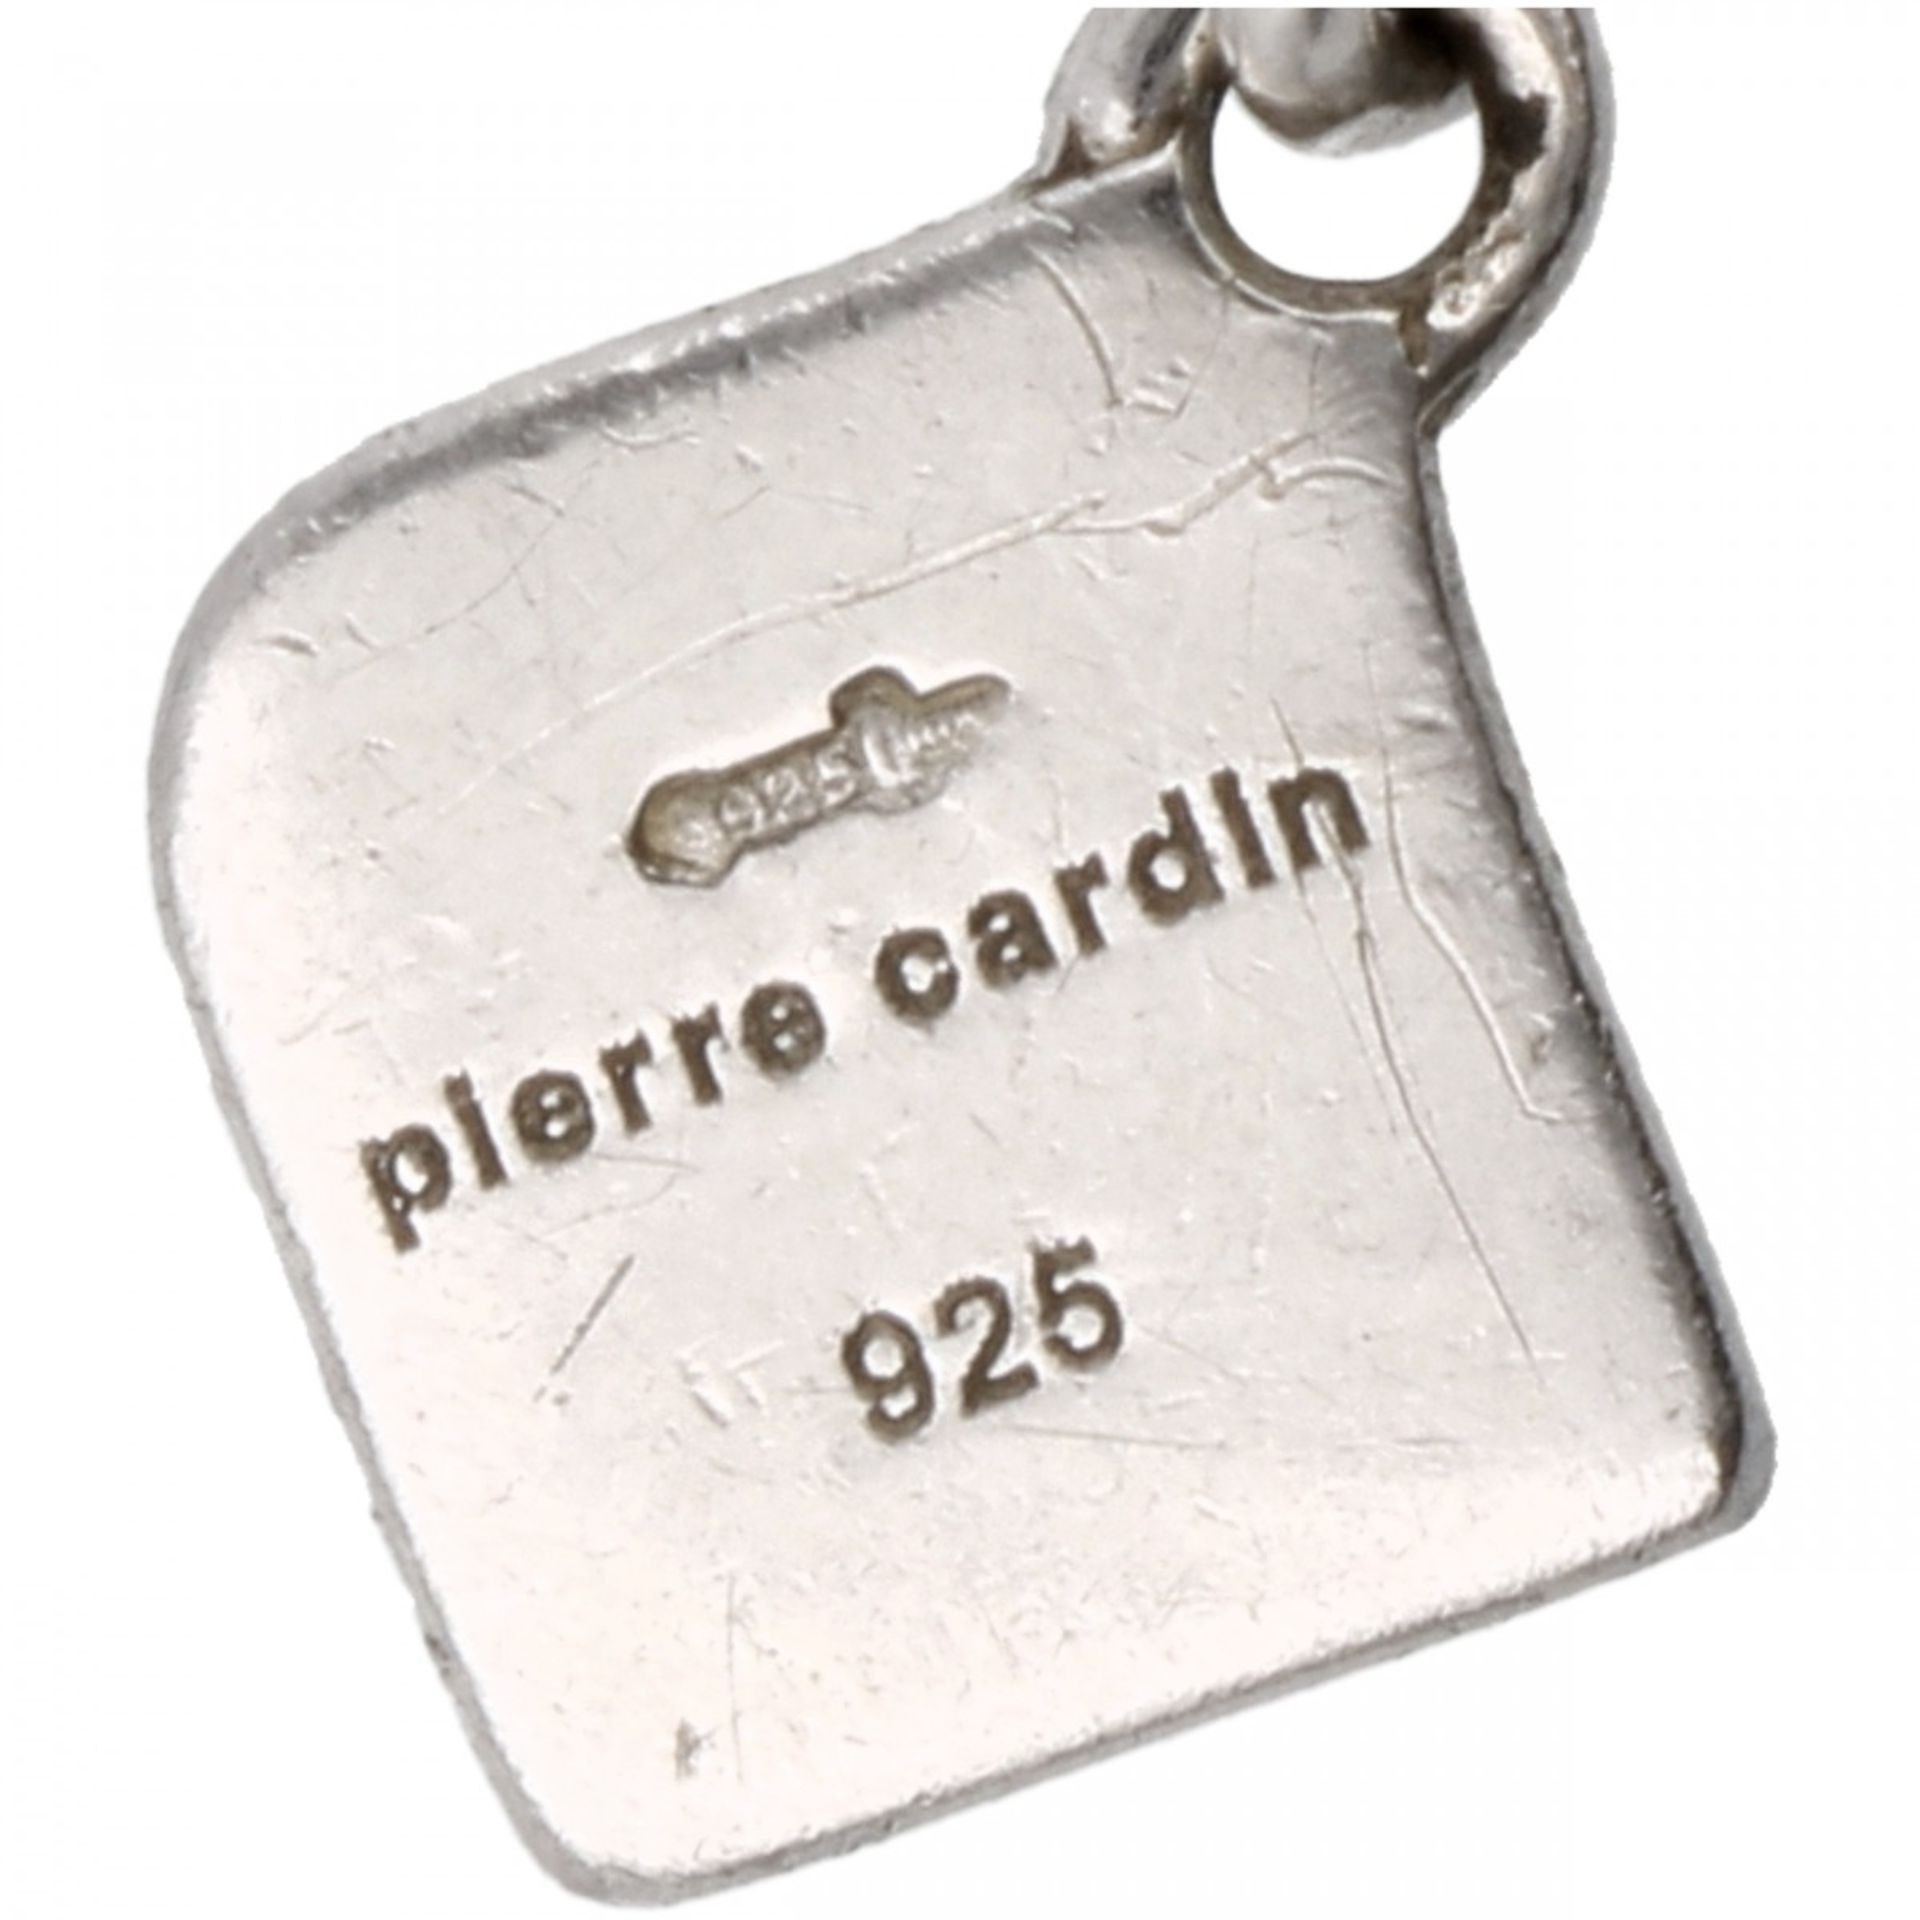 Zilveren Pierre Cardin collier, met zirkonia - 925/1000. - Bild 3 aus 3